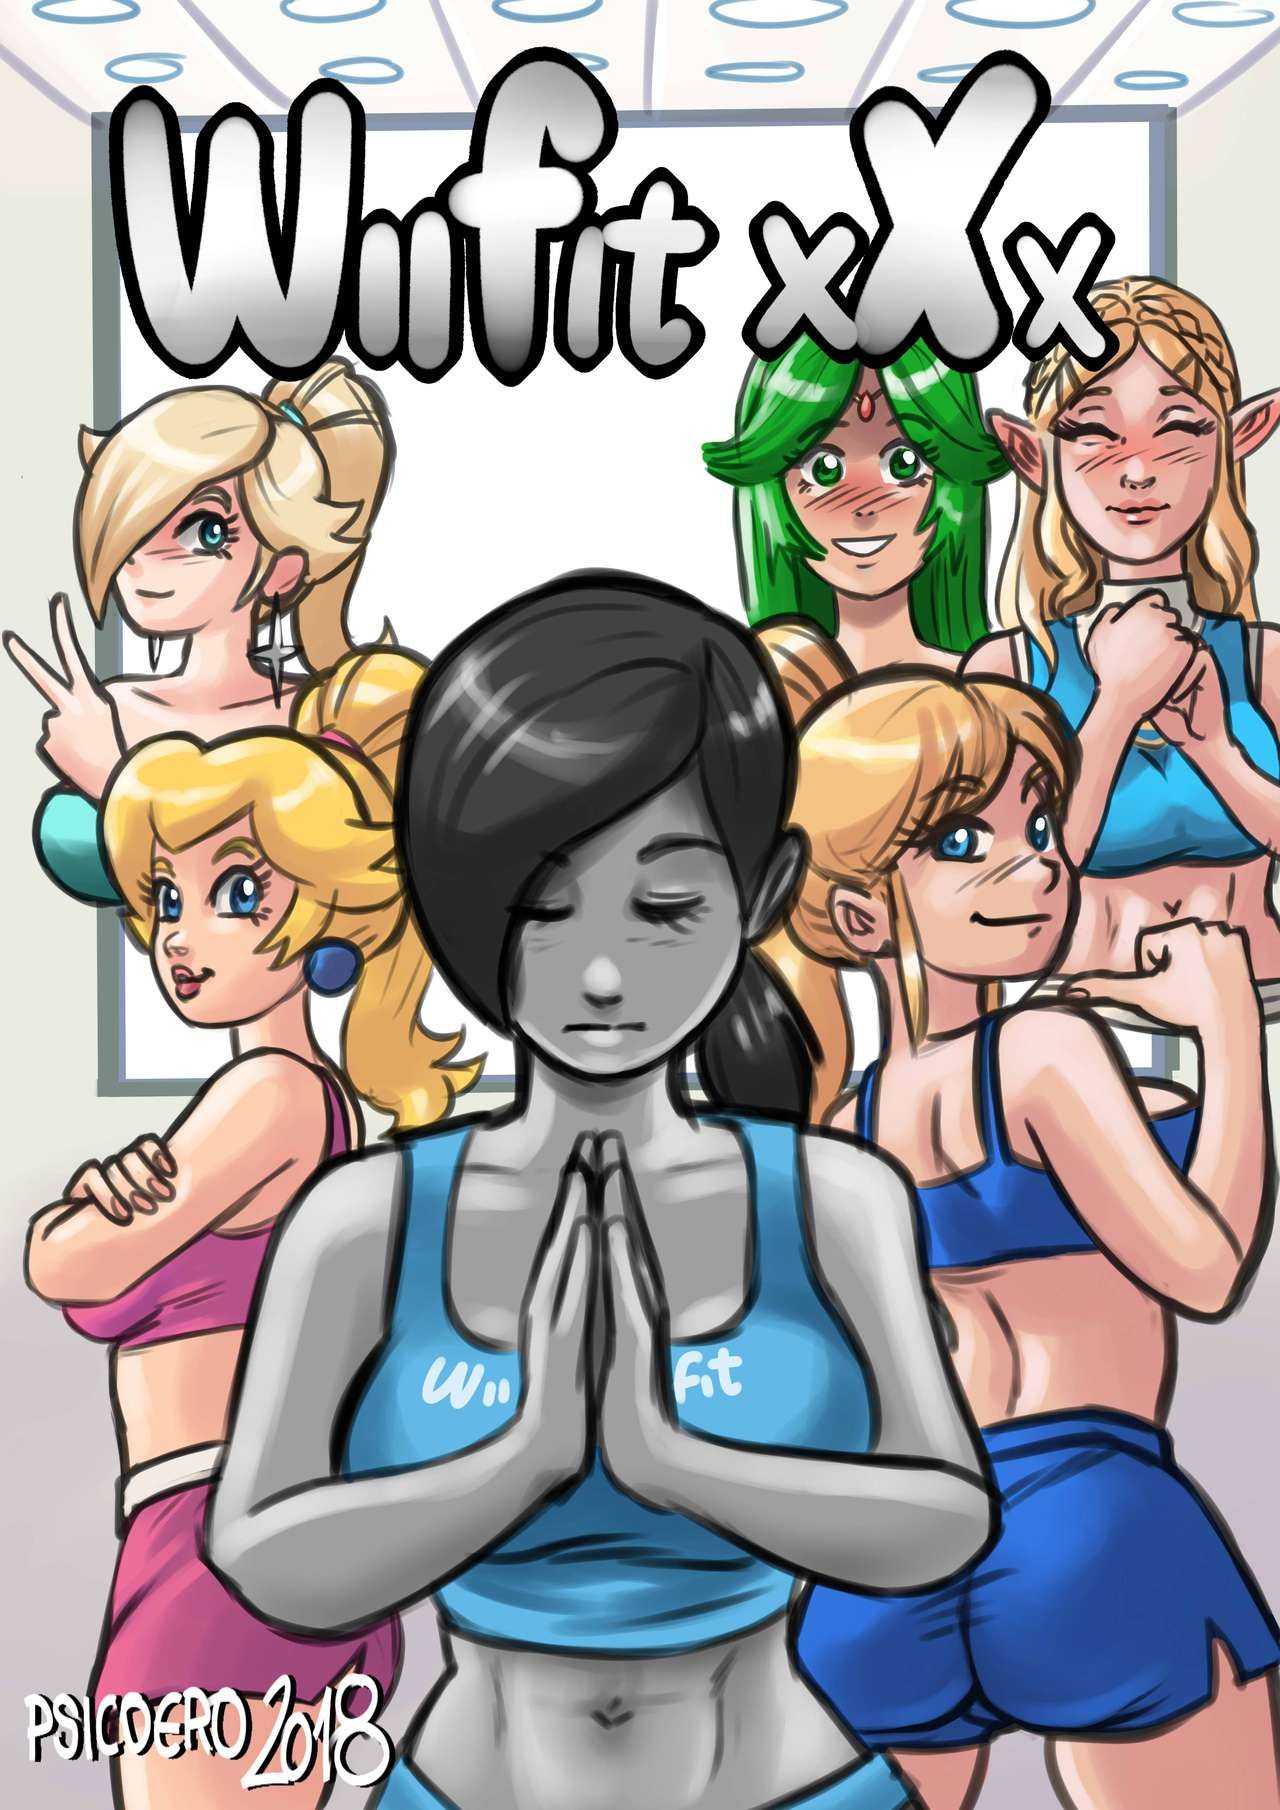 Wii fit xXx Porn Comic english 01